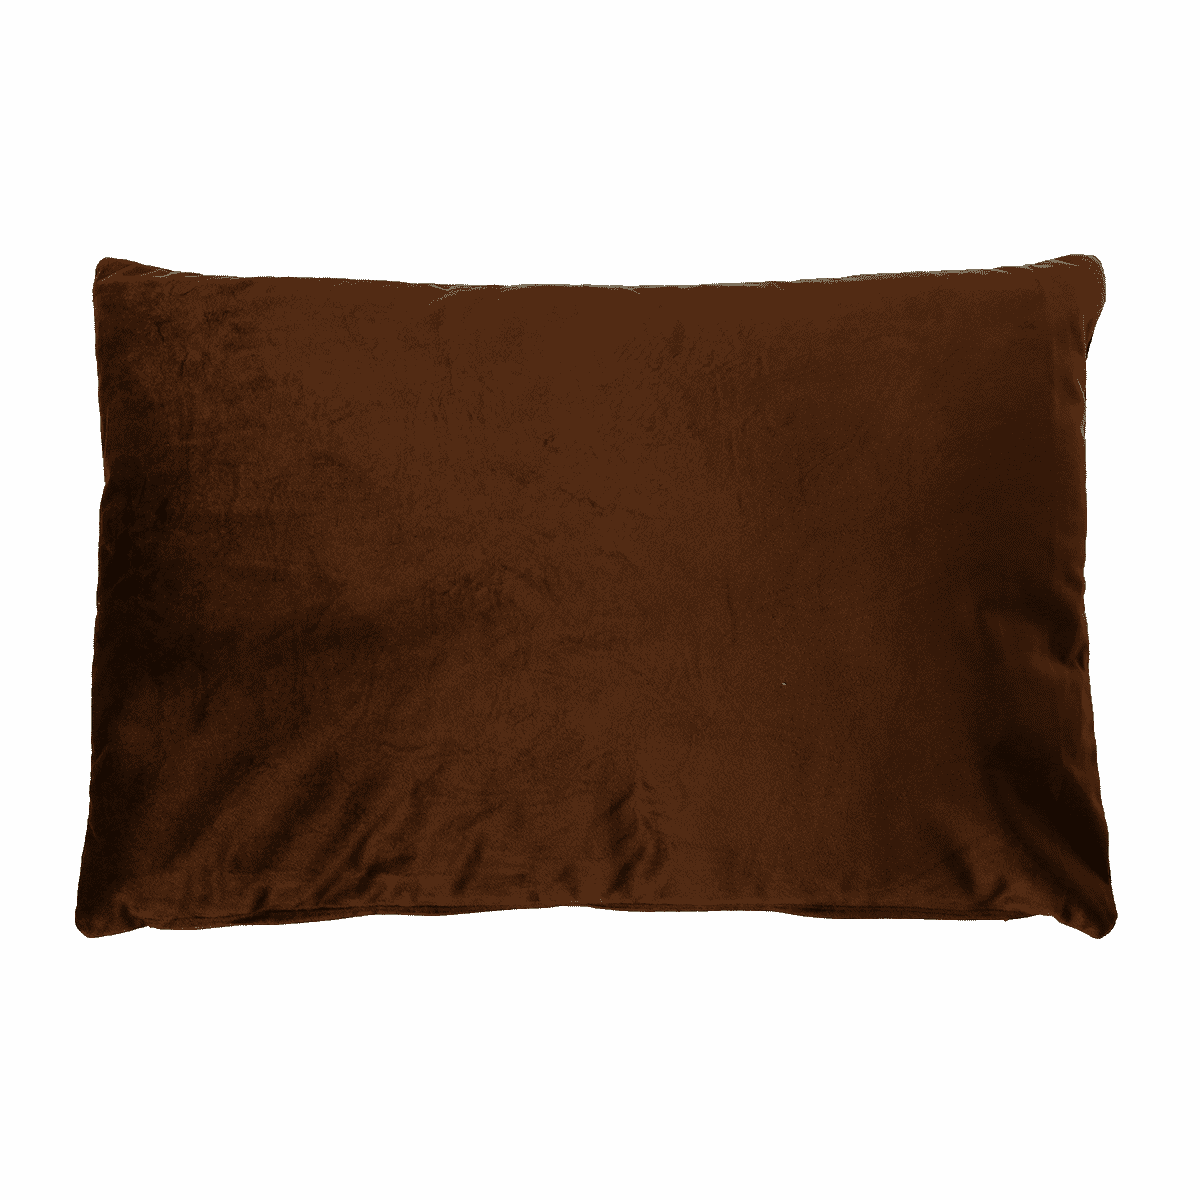 Cushion Cavallo 40 x 60 cm dark brown (DGR)